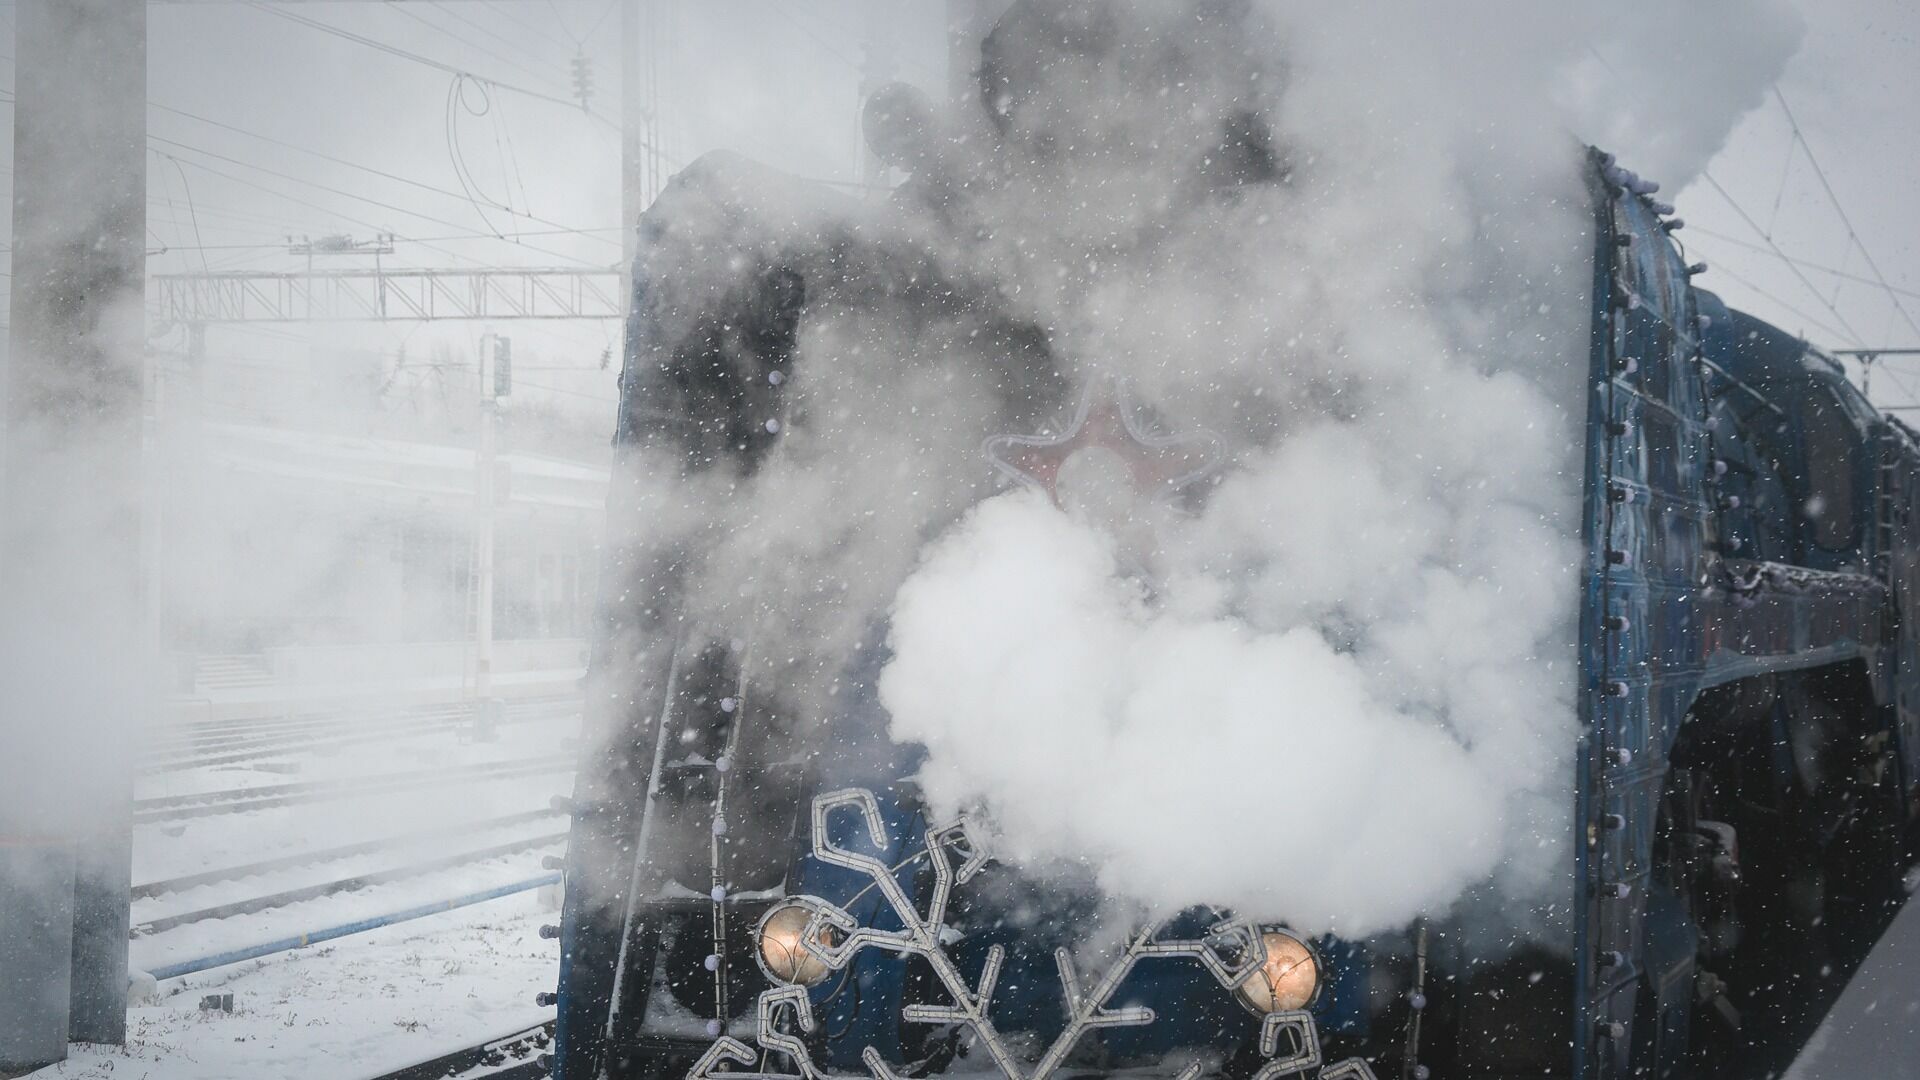 Переходившего пути в наушниках жителя Ростова-на-Дону переехал поезд 29 января